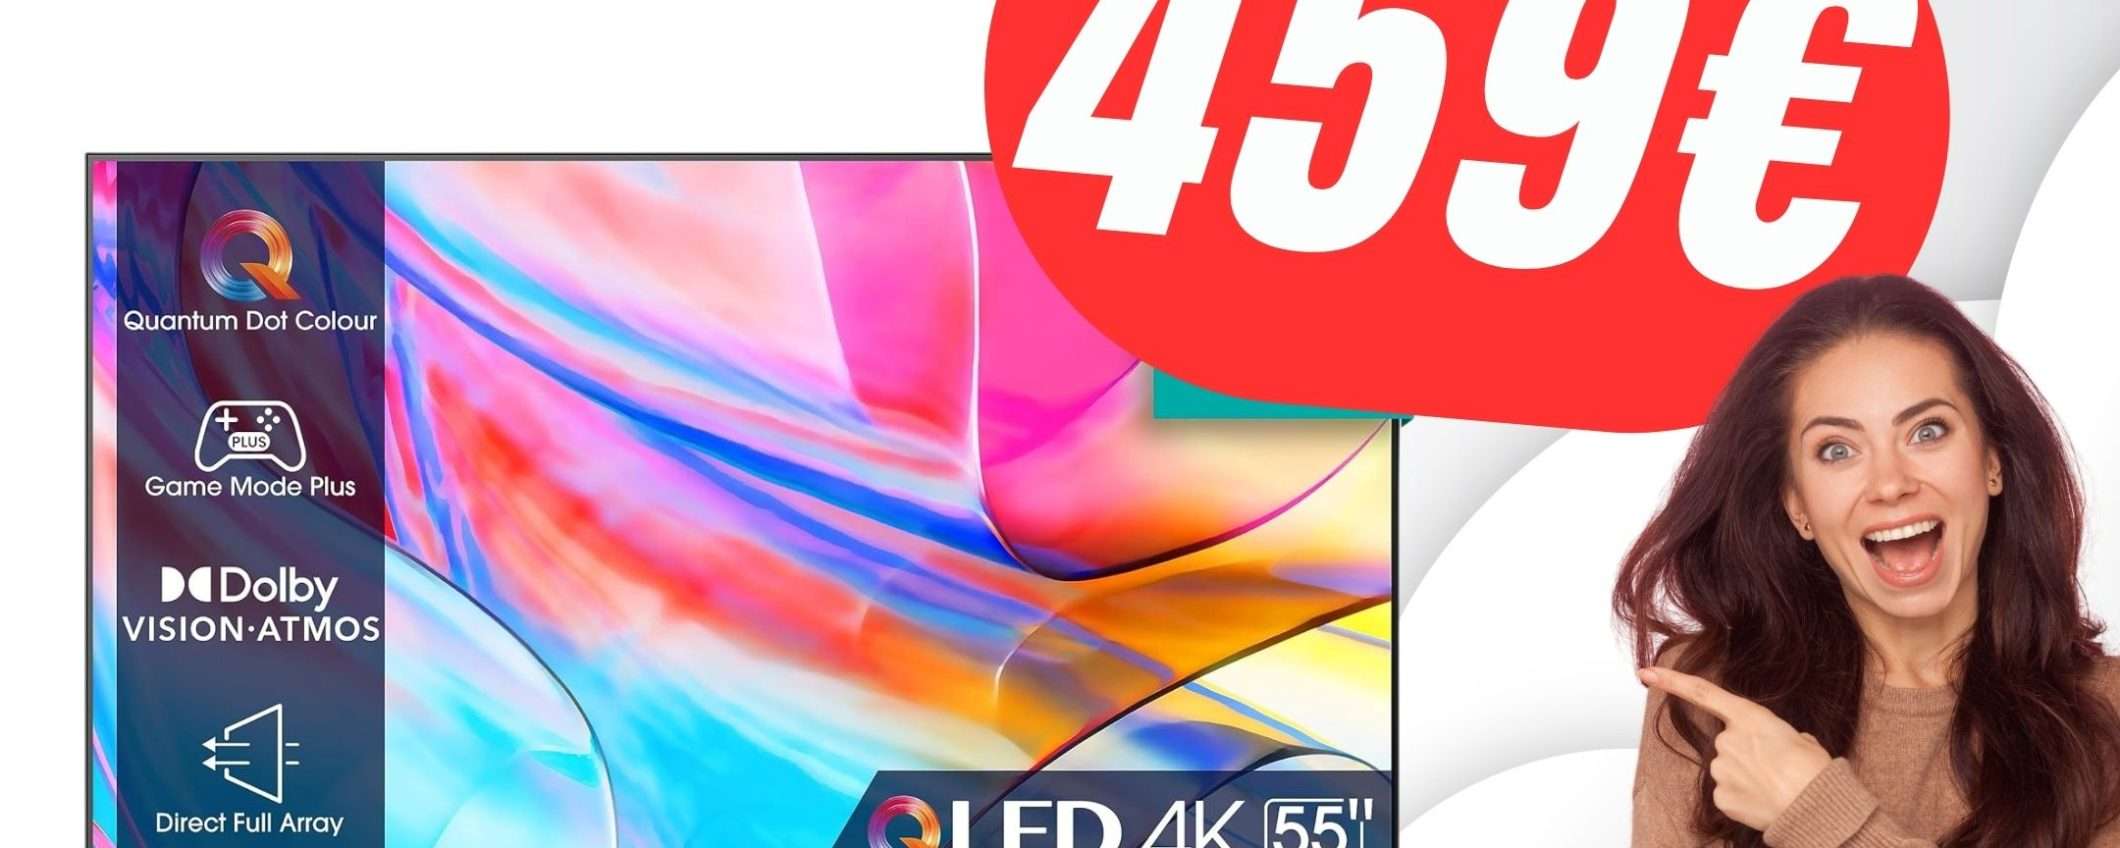 PREZZO FOLLE per lo Smart TV 4K di Hisense: solo 459€!